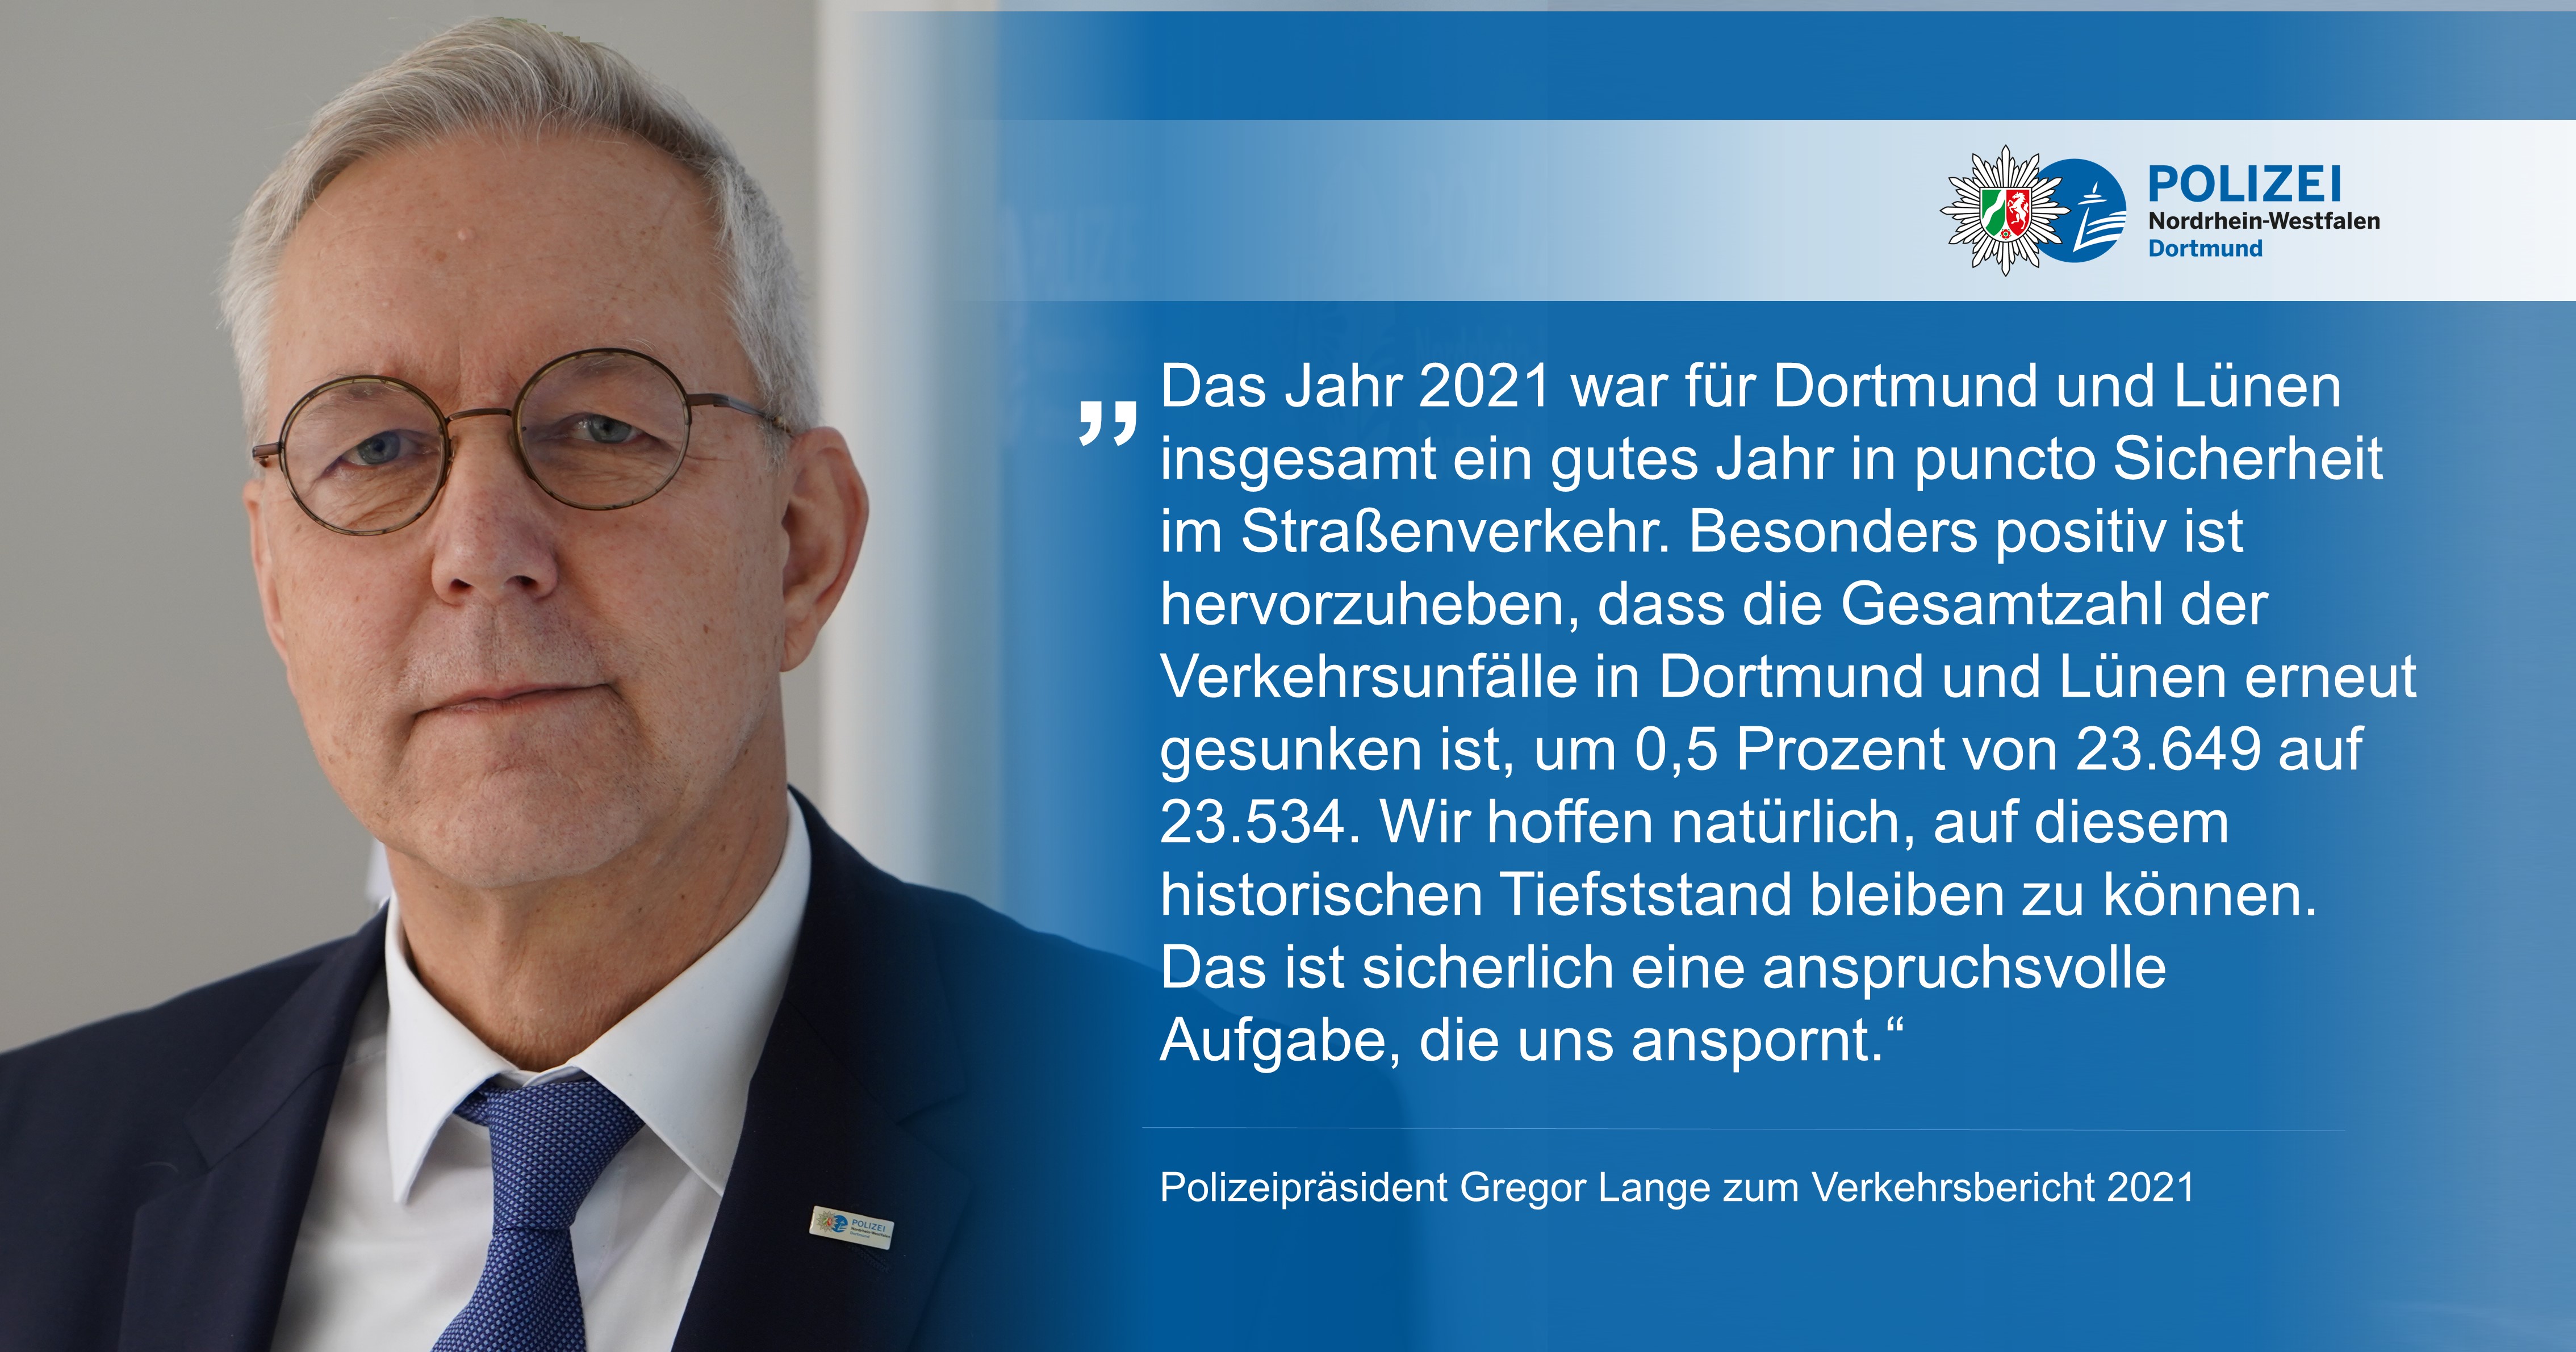 Polizeipräsident Gregor Lange zum Verkehrsbericht 2021